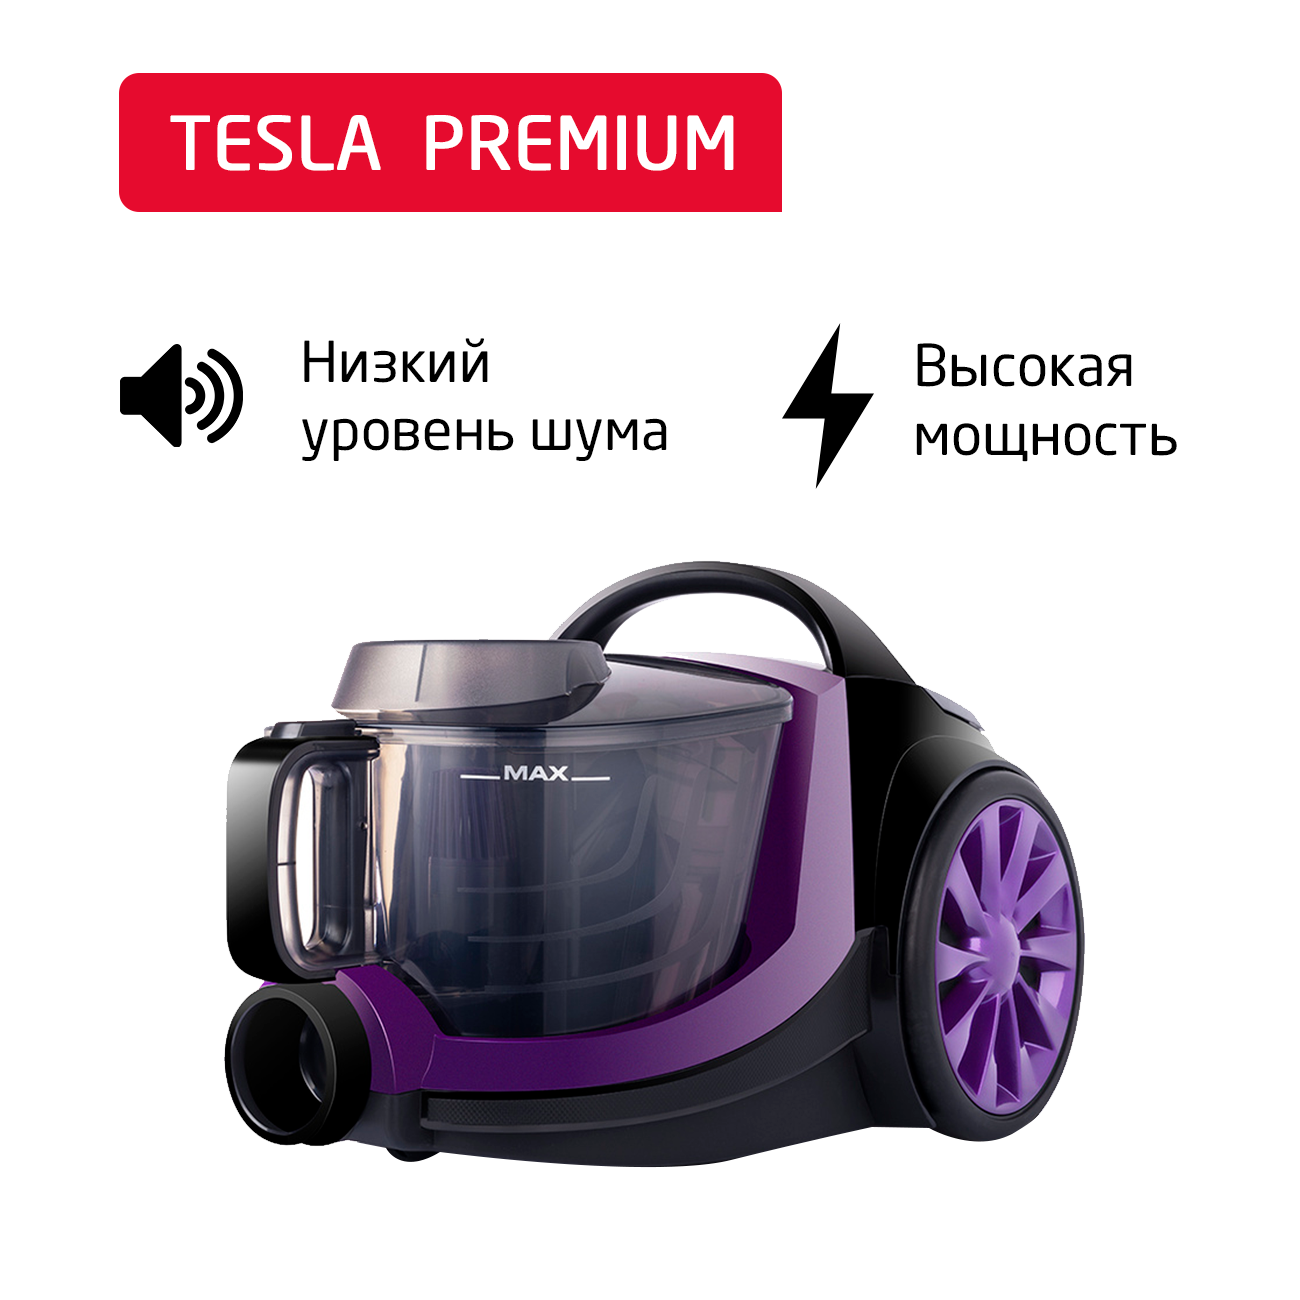 Пылесос ARNICA Tesla Premium фиолетовый пылесос arnica solara et13450 серебристый